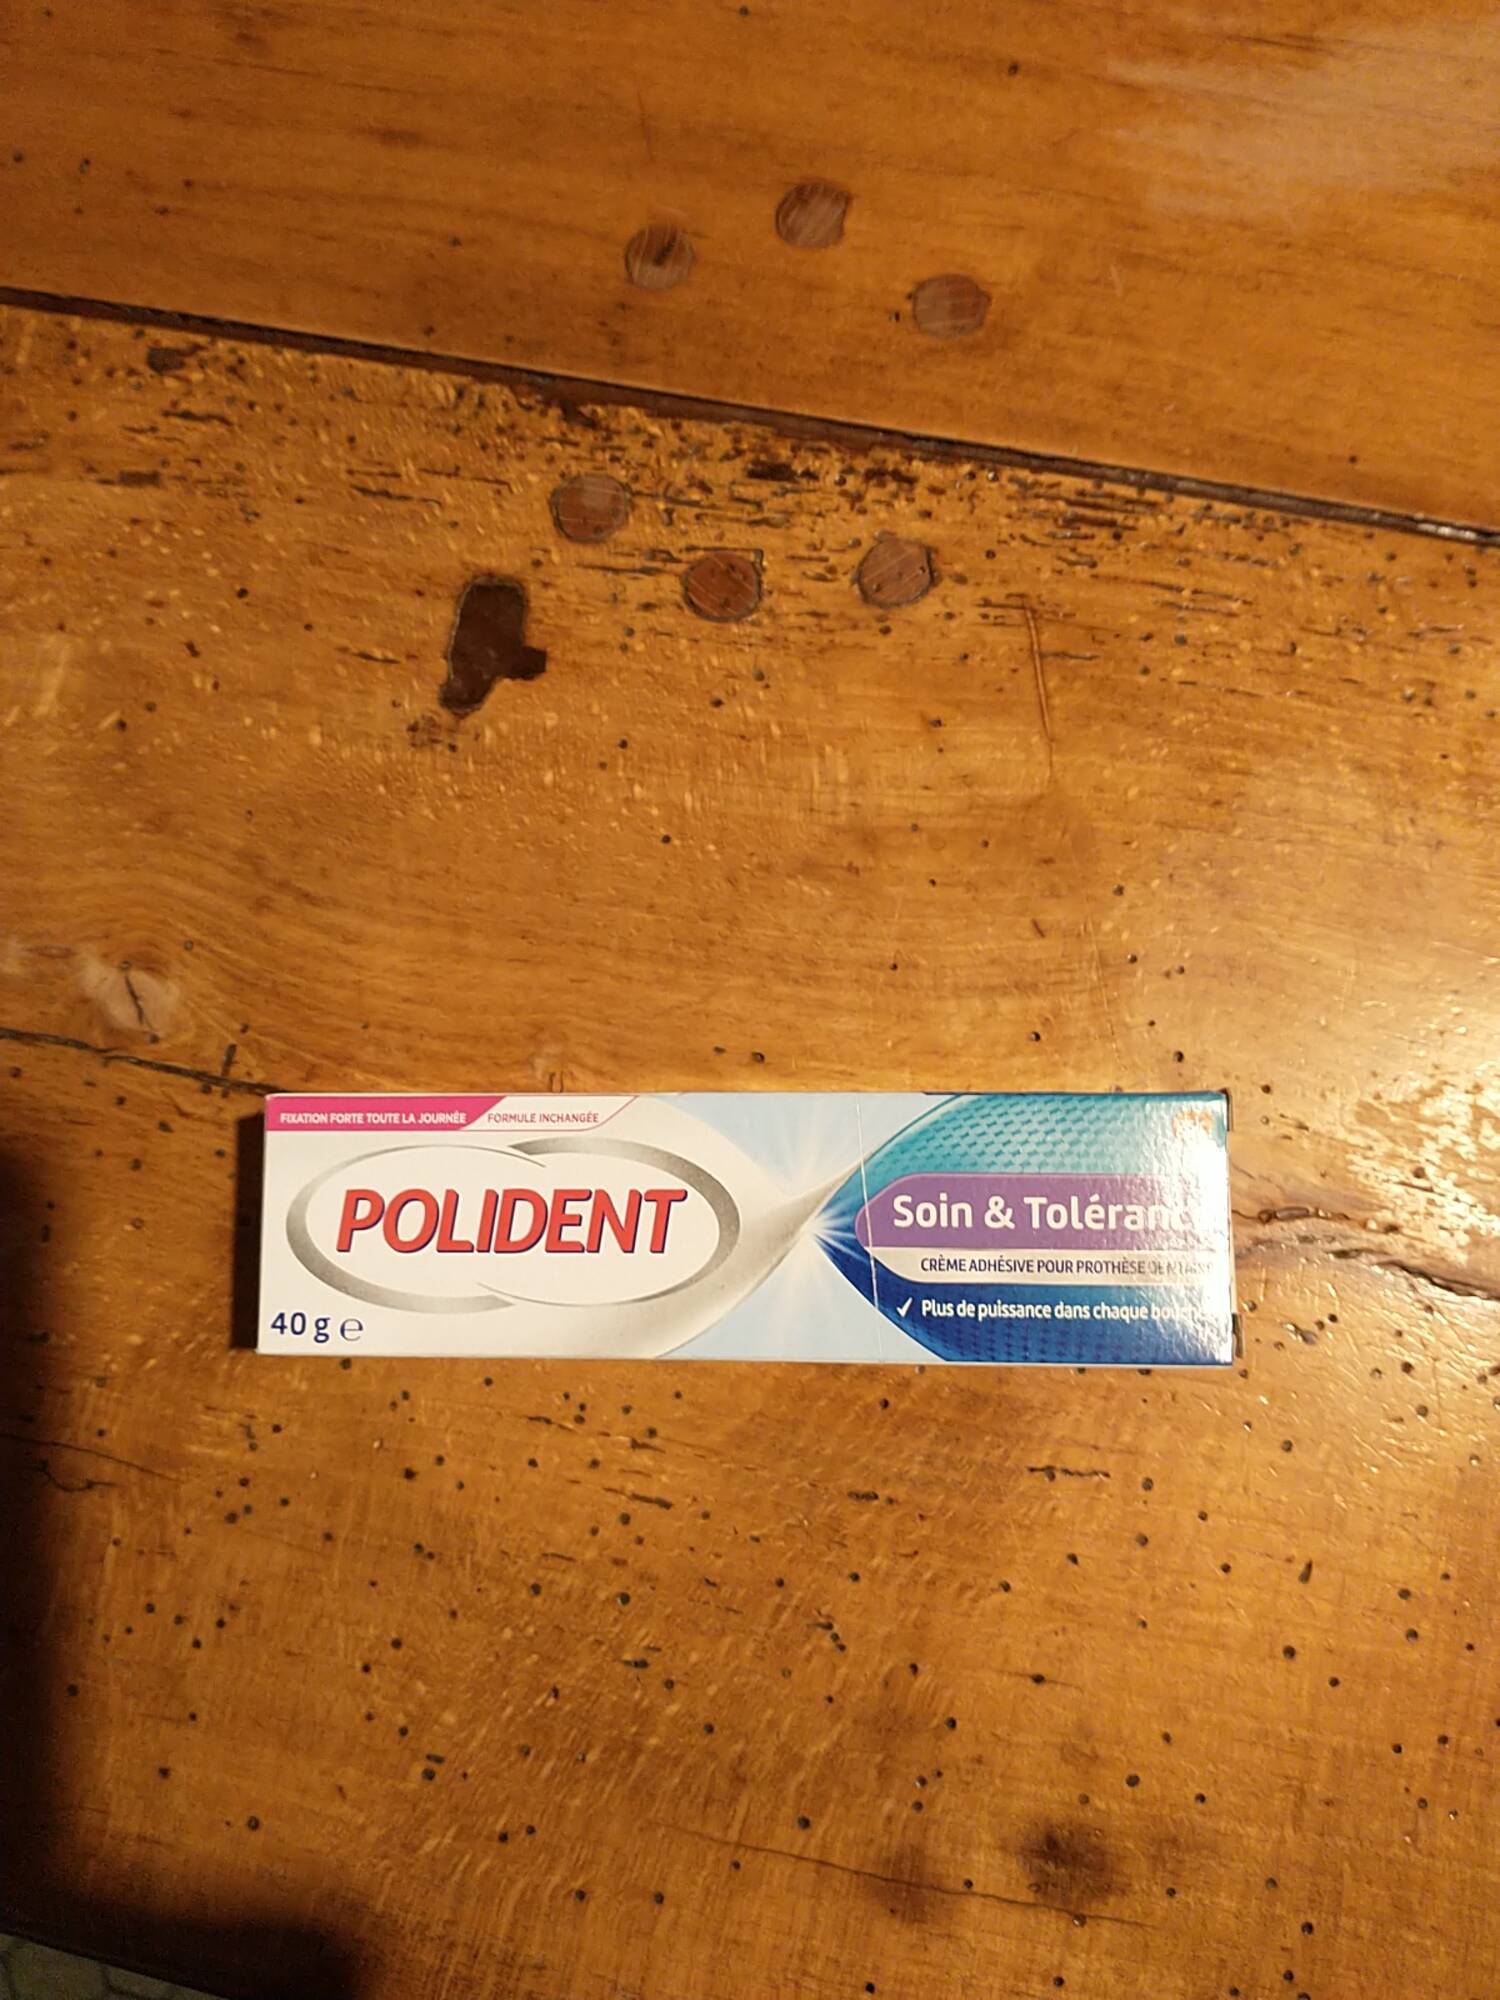 POLIDENT - Soin & tolérance - Crème adhésive pour prothèse dentaire